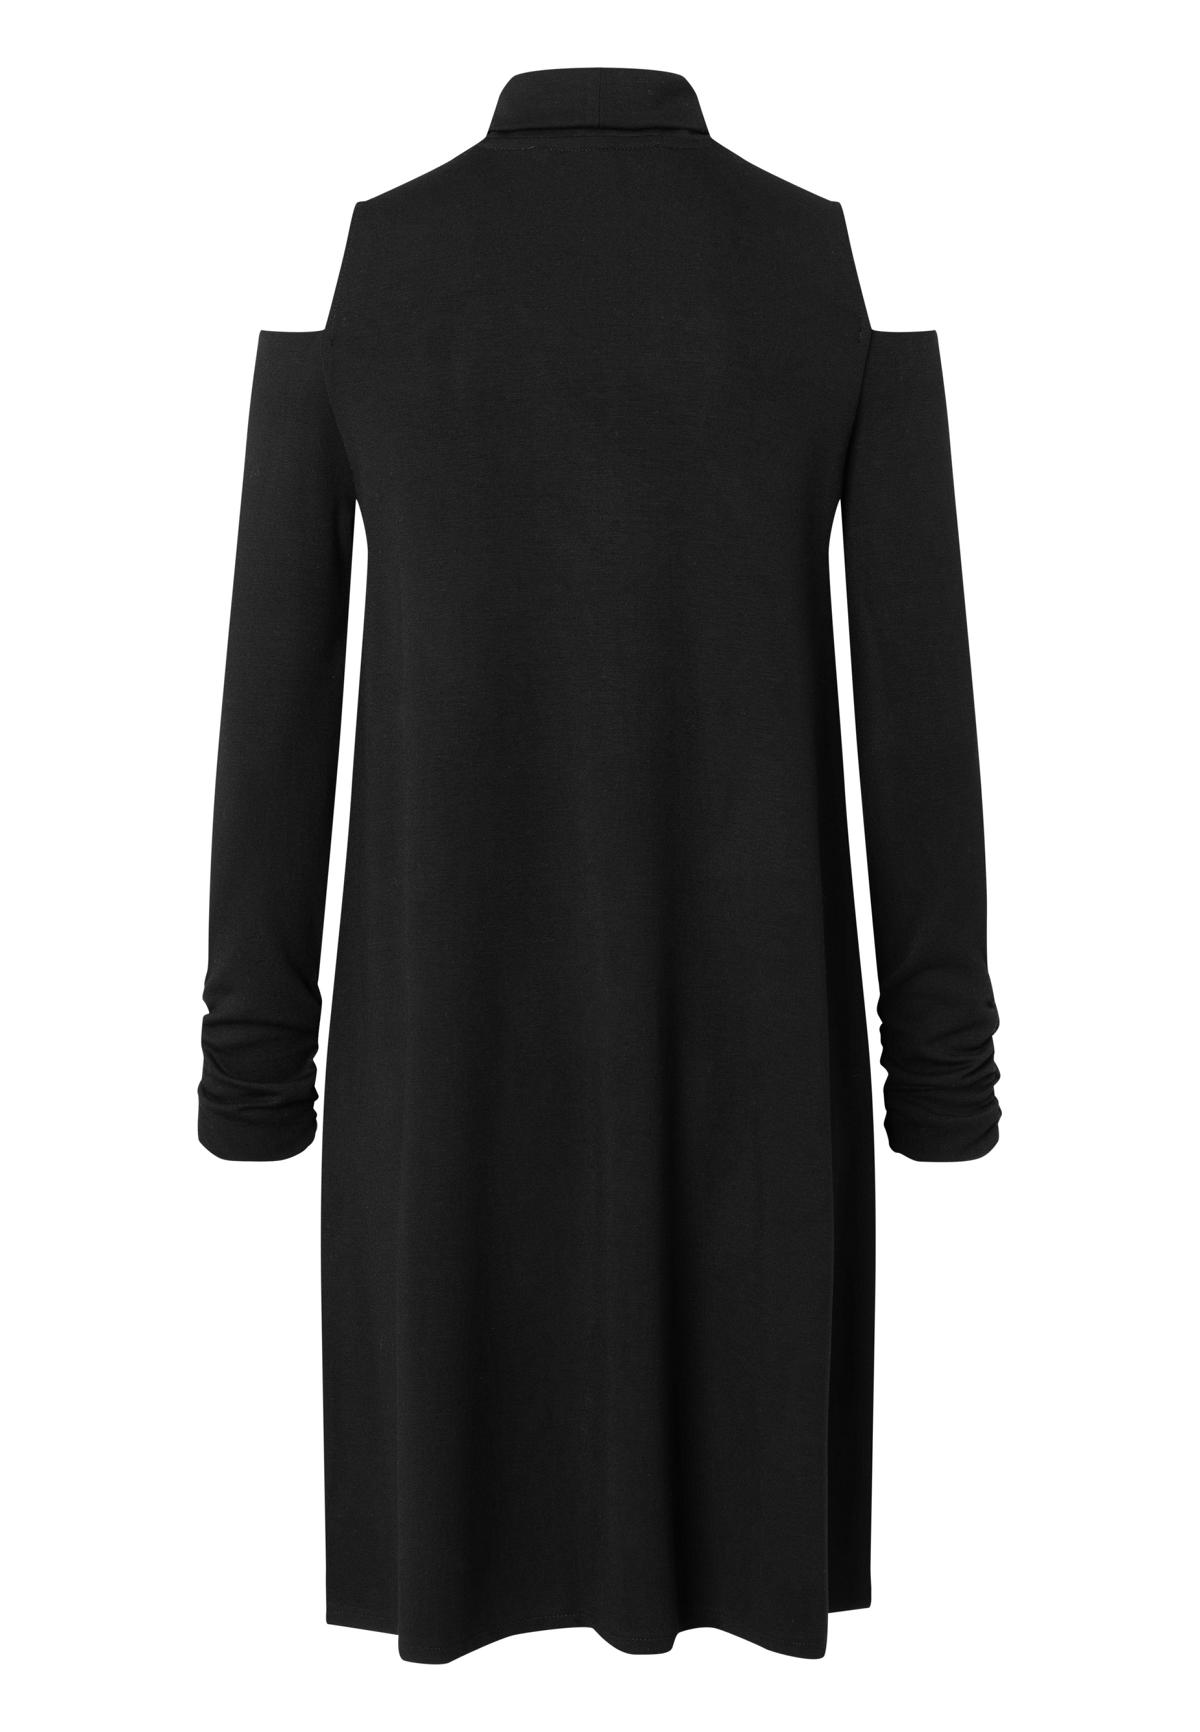 ANA ALCAZAR 040204-3427 Damen Kleid 60s dress cut out stretch original black